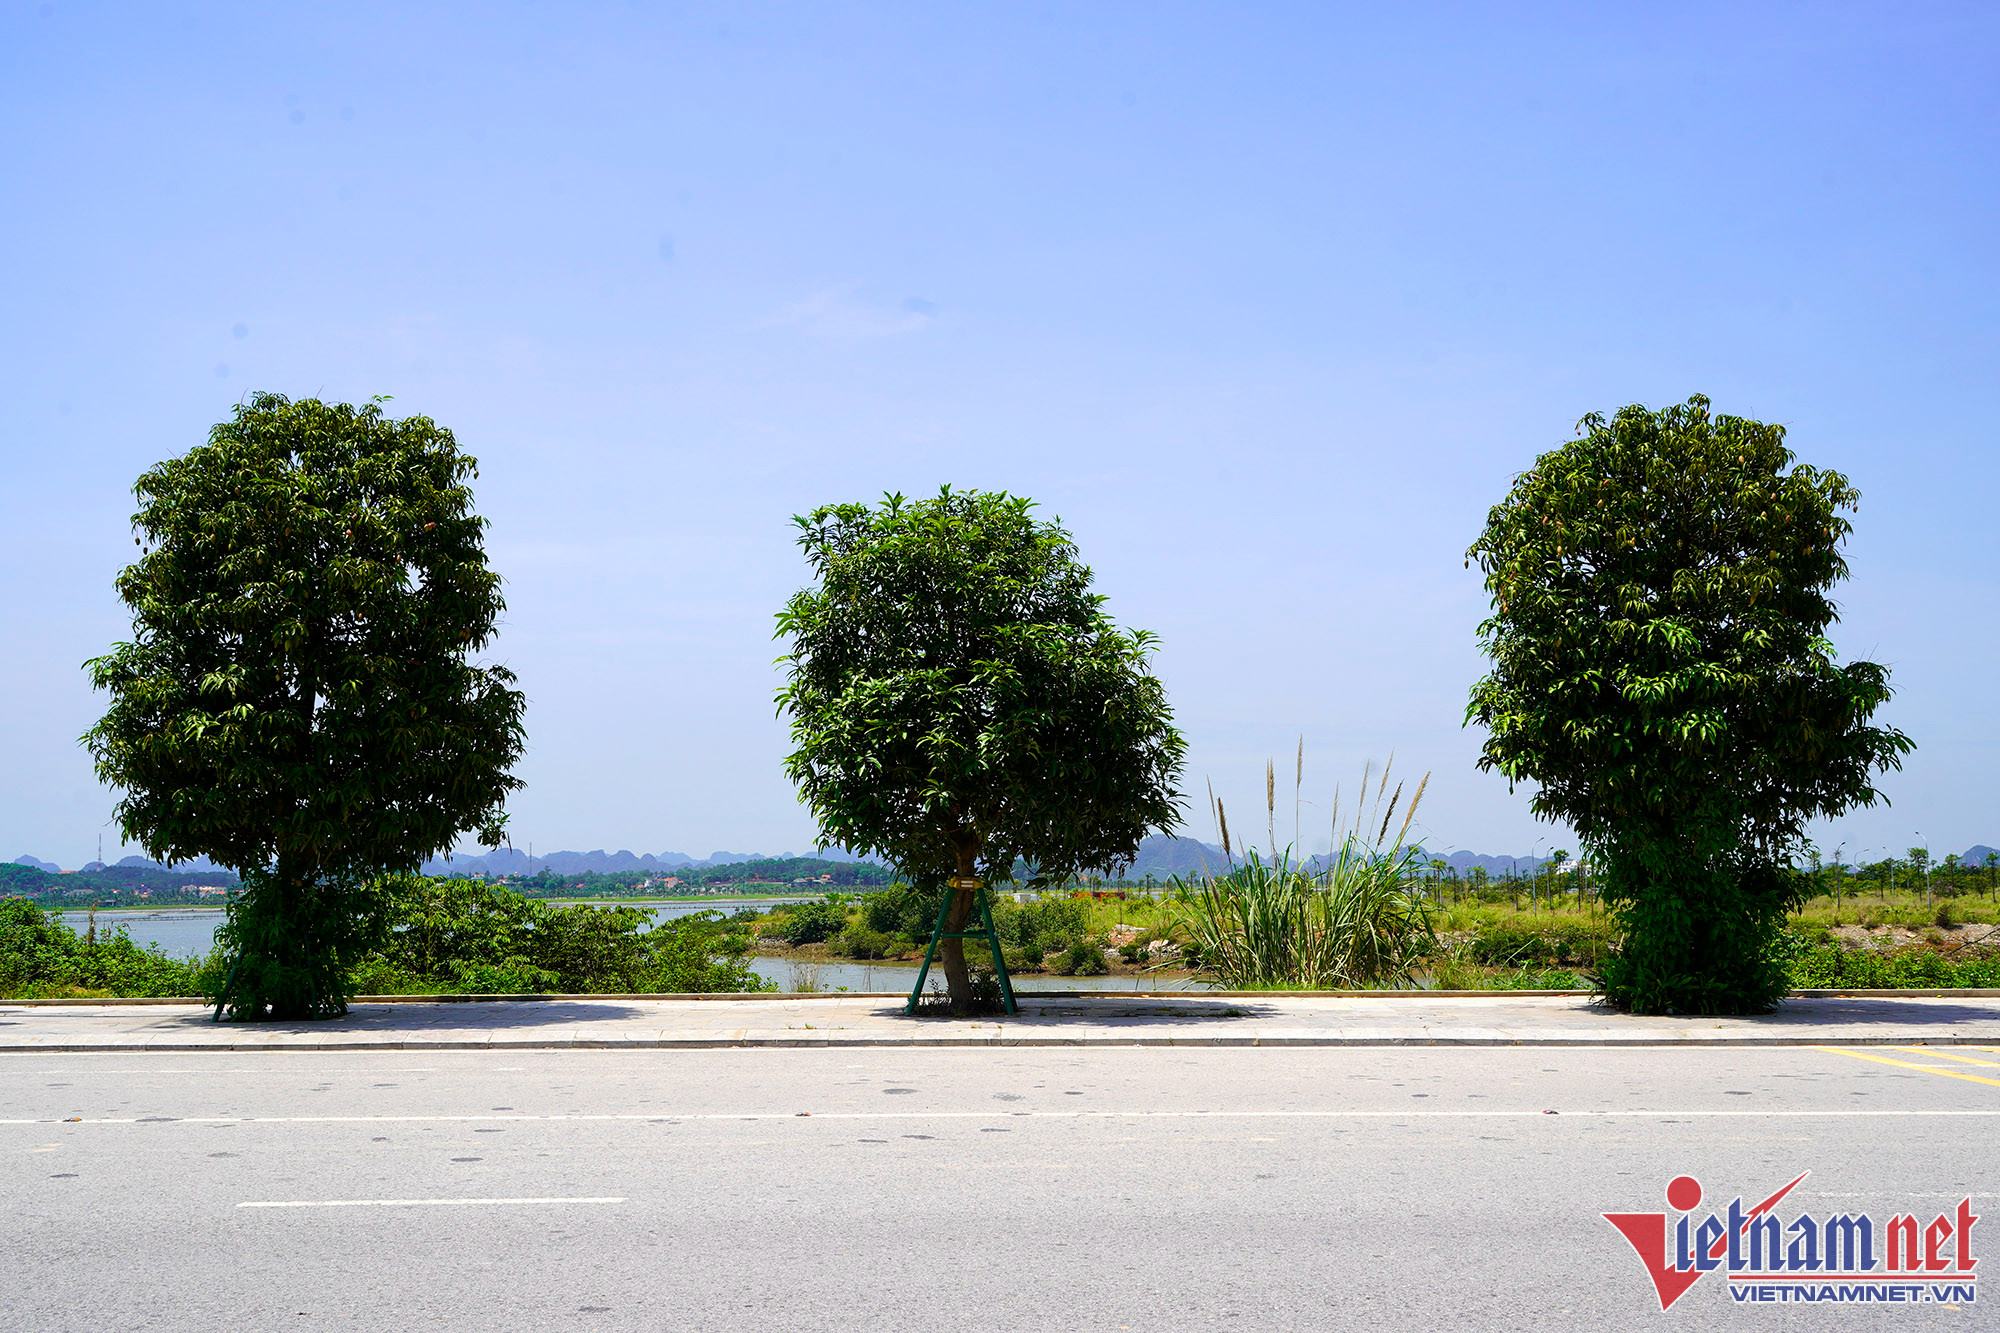 Nghìn cây xoài trĩu quả bên đường 10 làn xe ở Hạ Long, người dân vô tư hái - Ảnh 10.